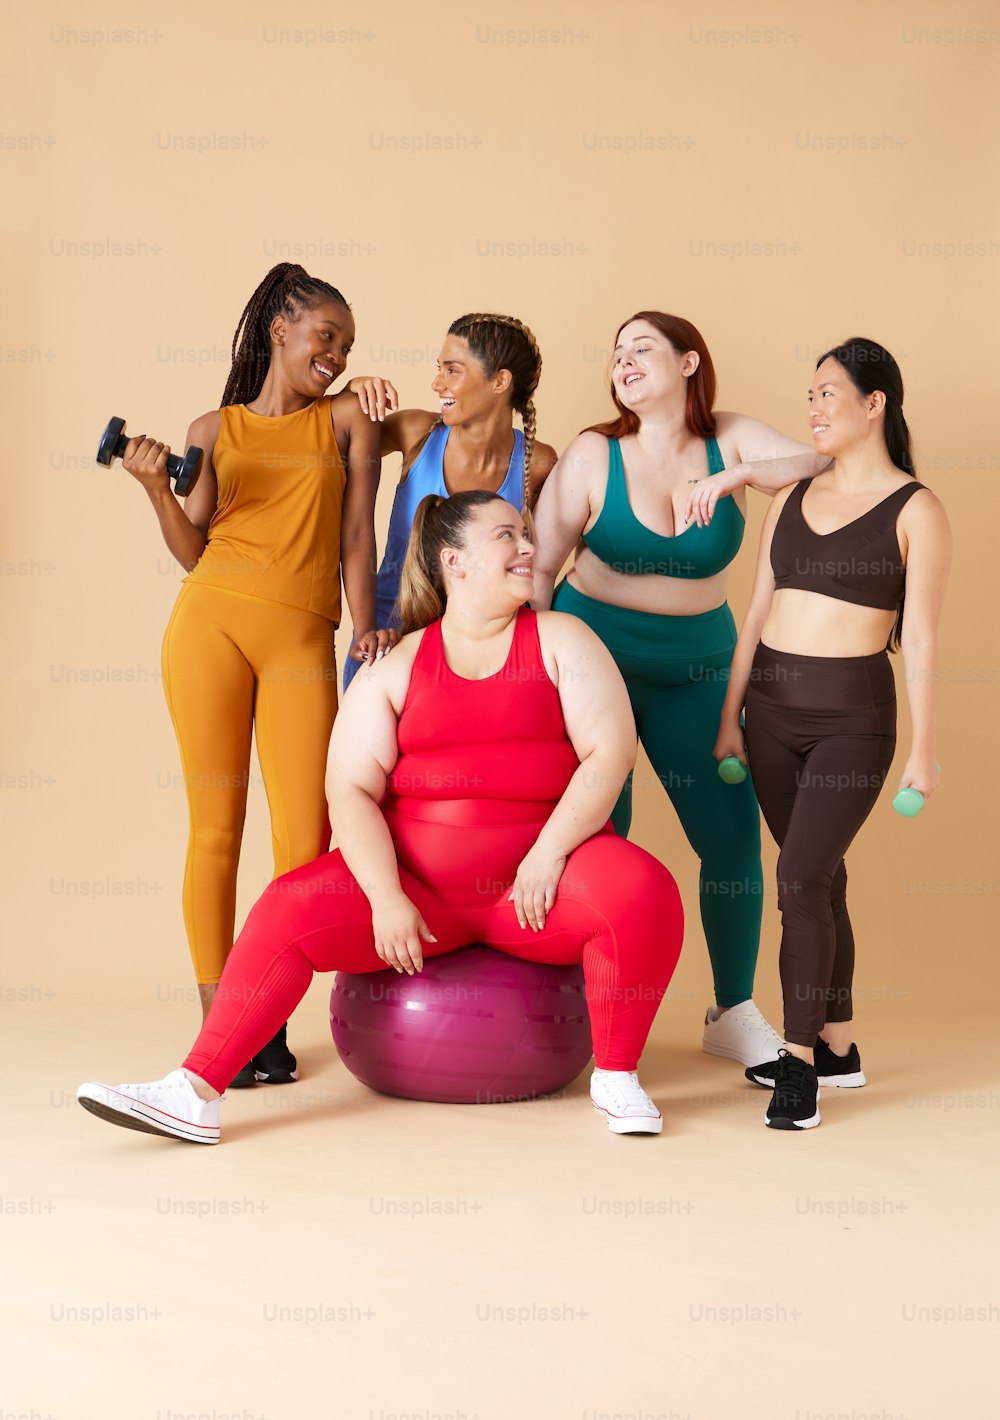 Un grupo de mujeres posando para una foto en una pelota de ejercicio